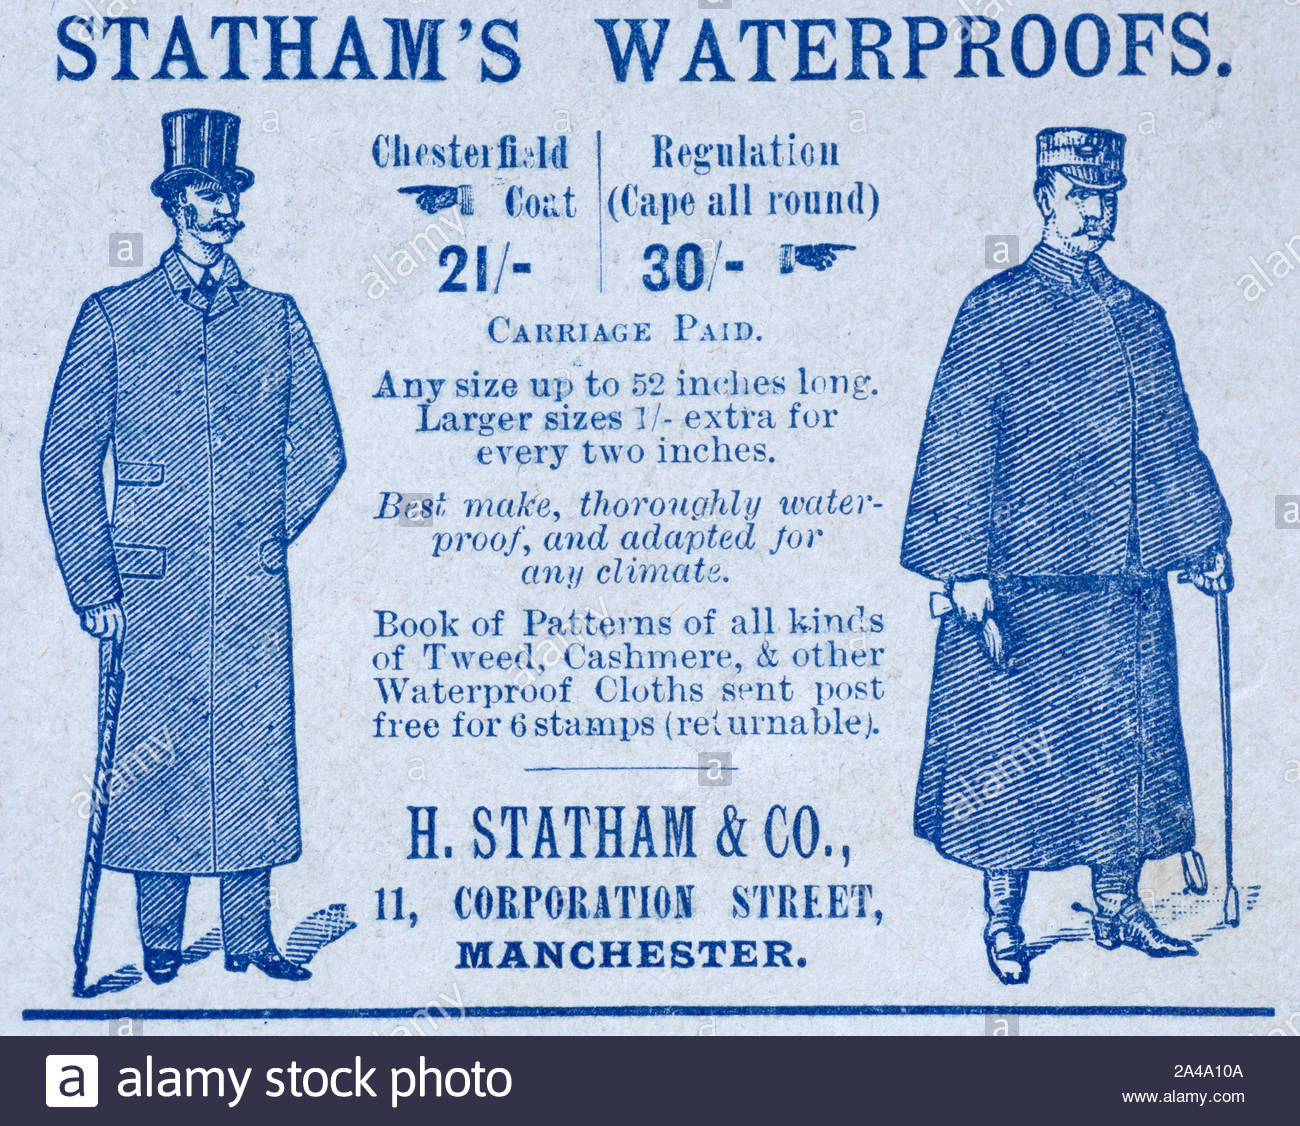 Der viktorianischen Ära, Statham ist imprägniert, Vintage Werbung von 1895 Stockfoto